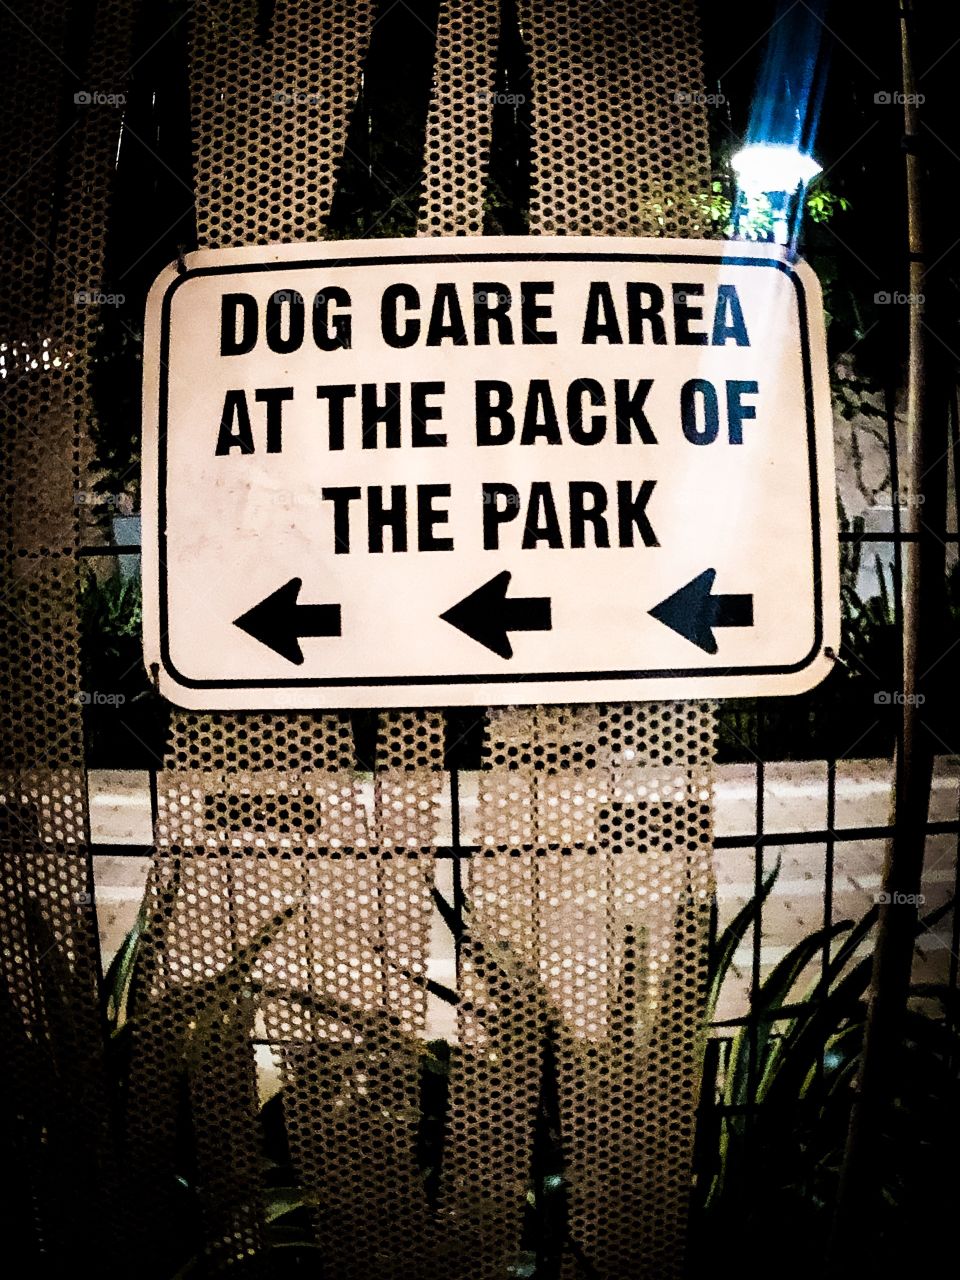 Dog park dtla